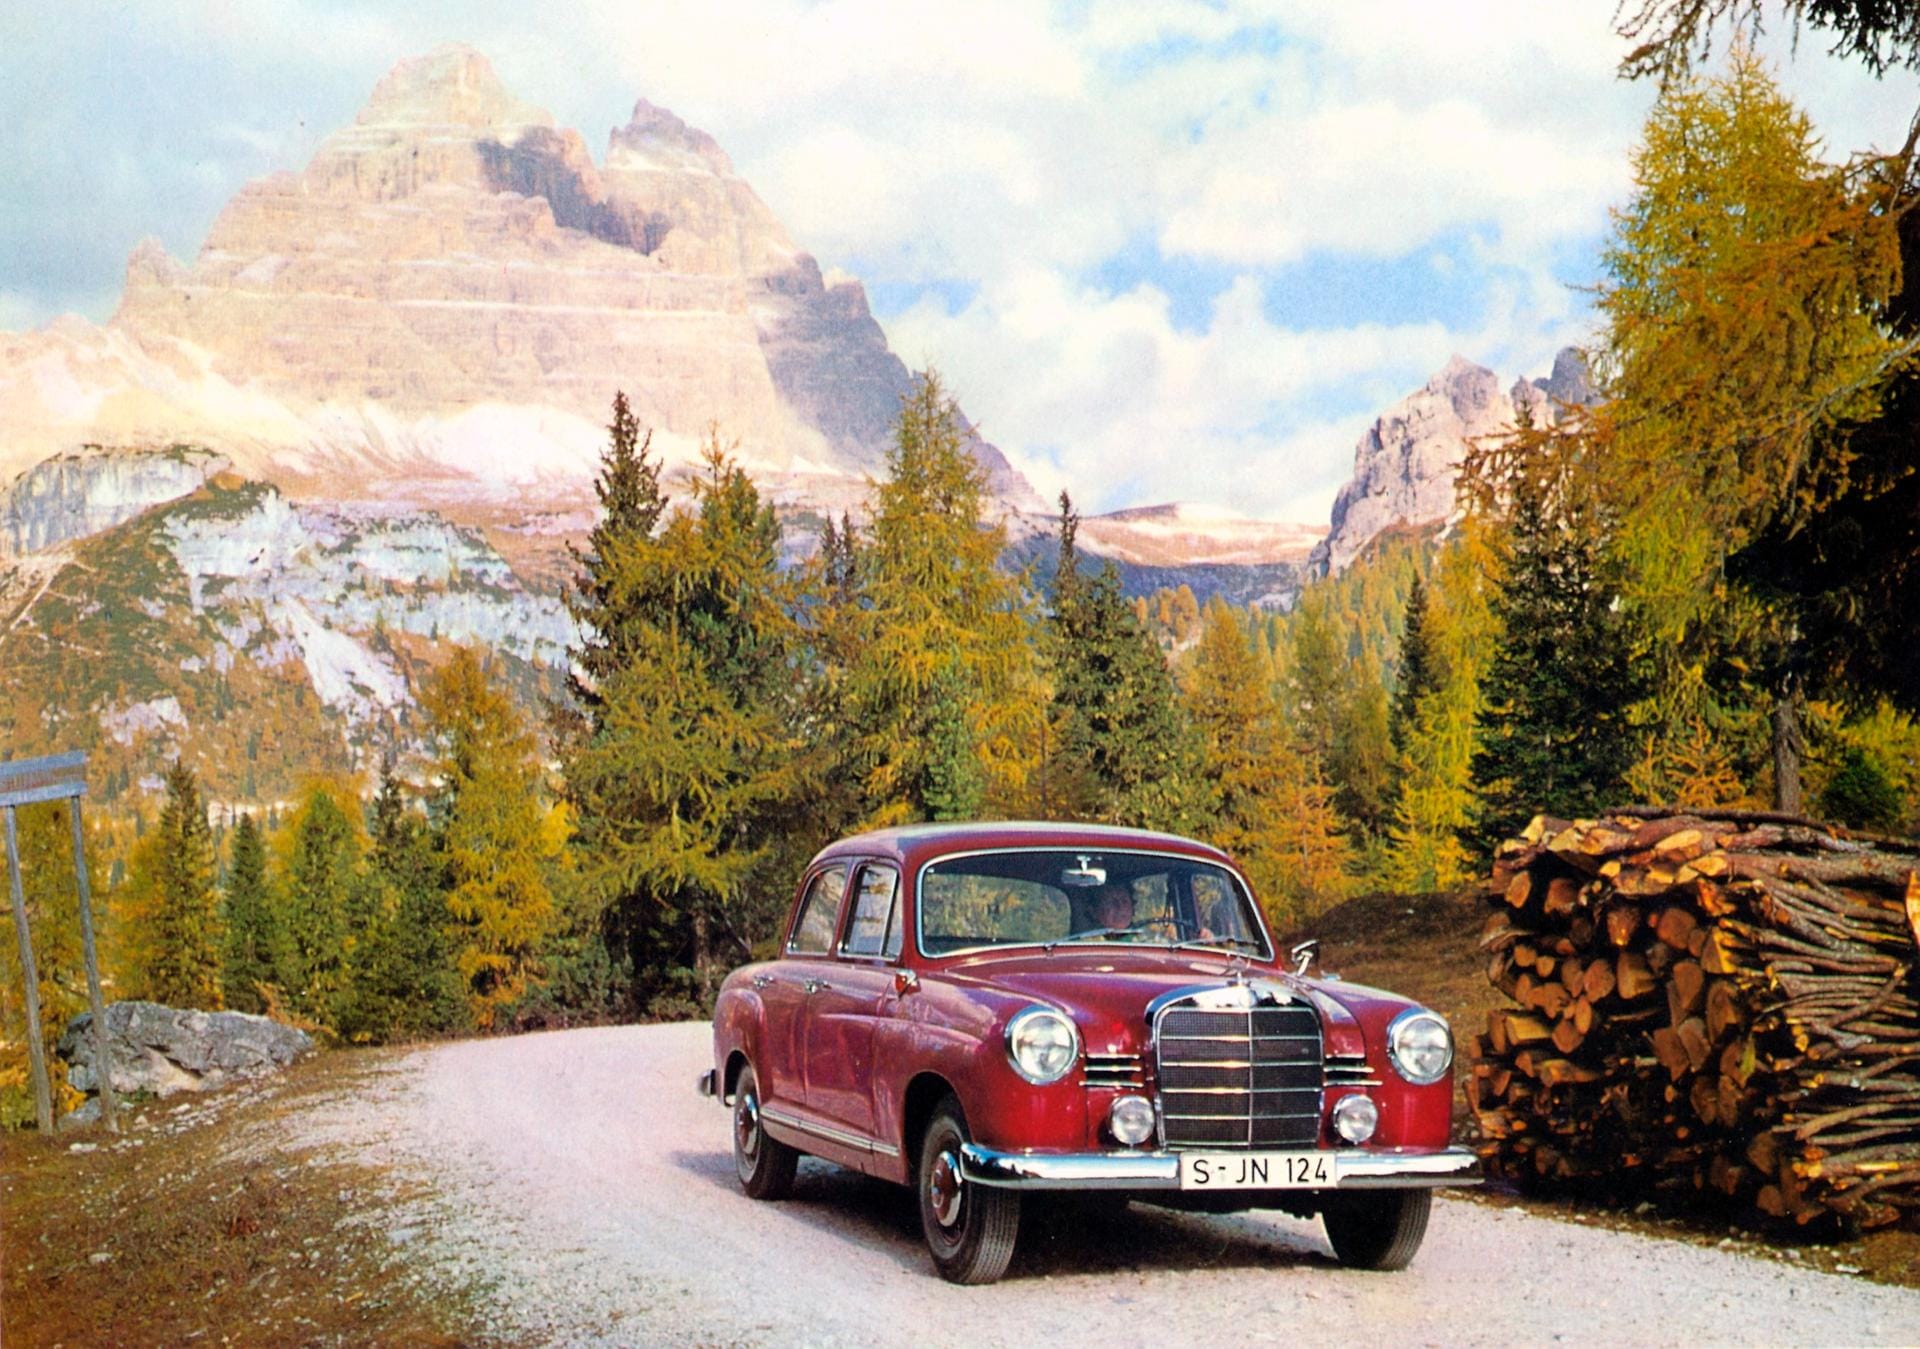 Der von 1956 bis 1961 gebaute Mercedes 190 , wegen seiner Form "Ponton" genannt, steigt derzeit ebenfalls kräftig im Wert. Der einstige Mittelklassewagen mit 75 PS erzielt derzeit eine sehr hohe Wertsteigerung.